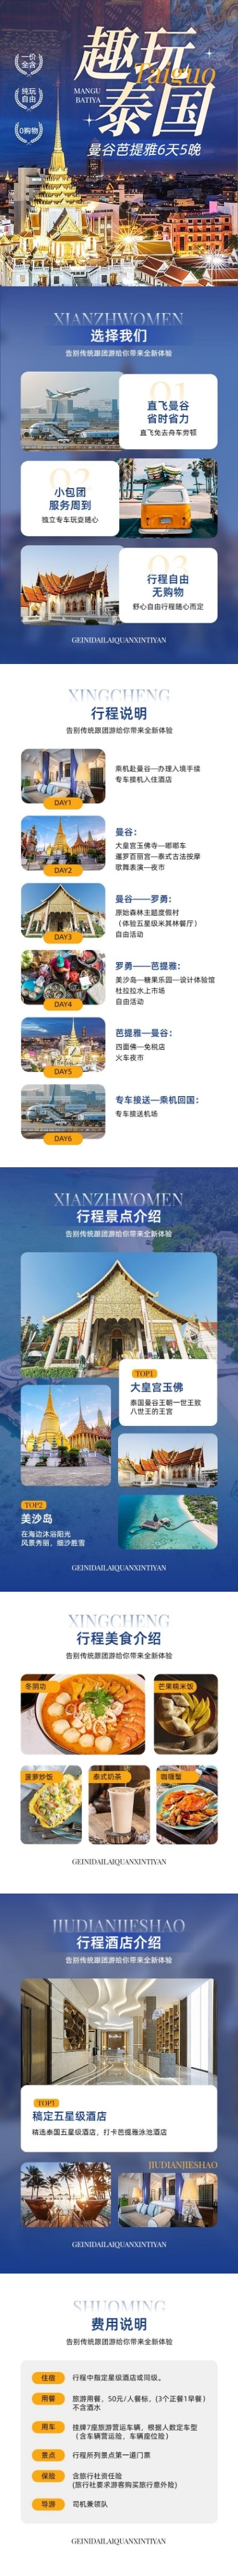 旅游出行泰国旅游团跟团游线路营销详情页